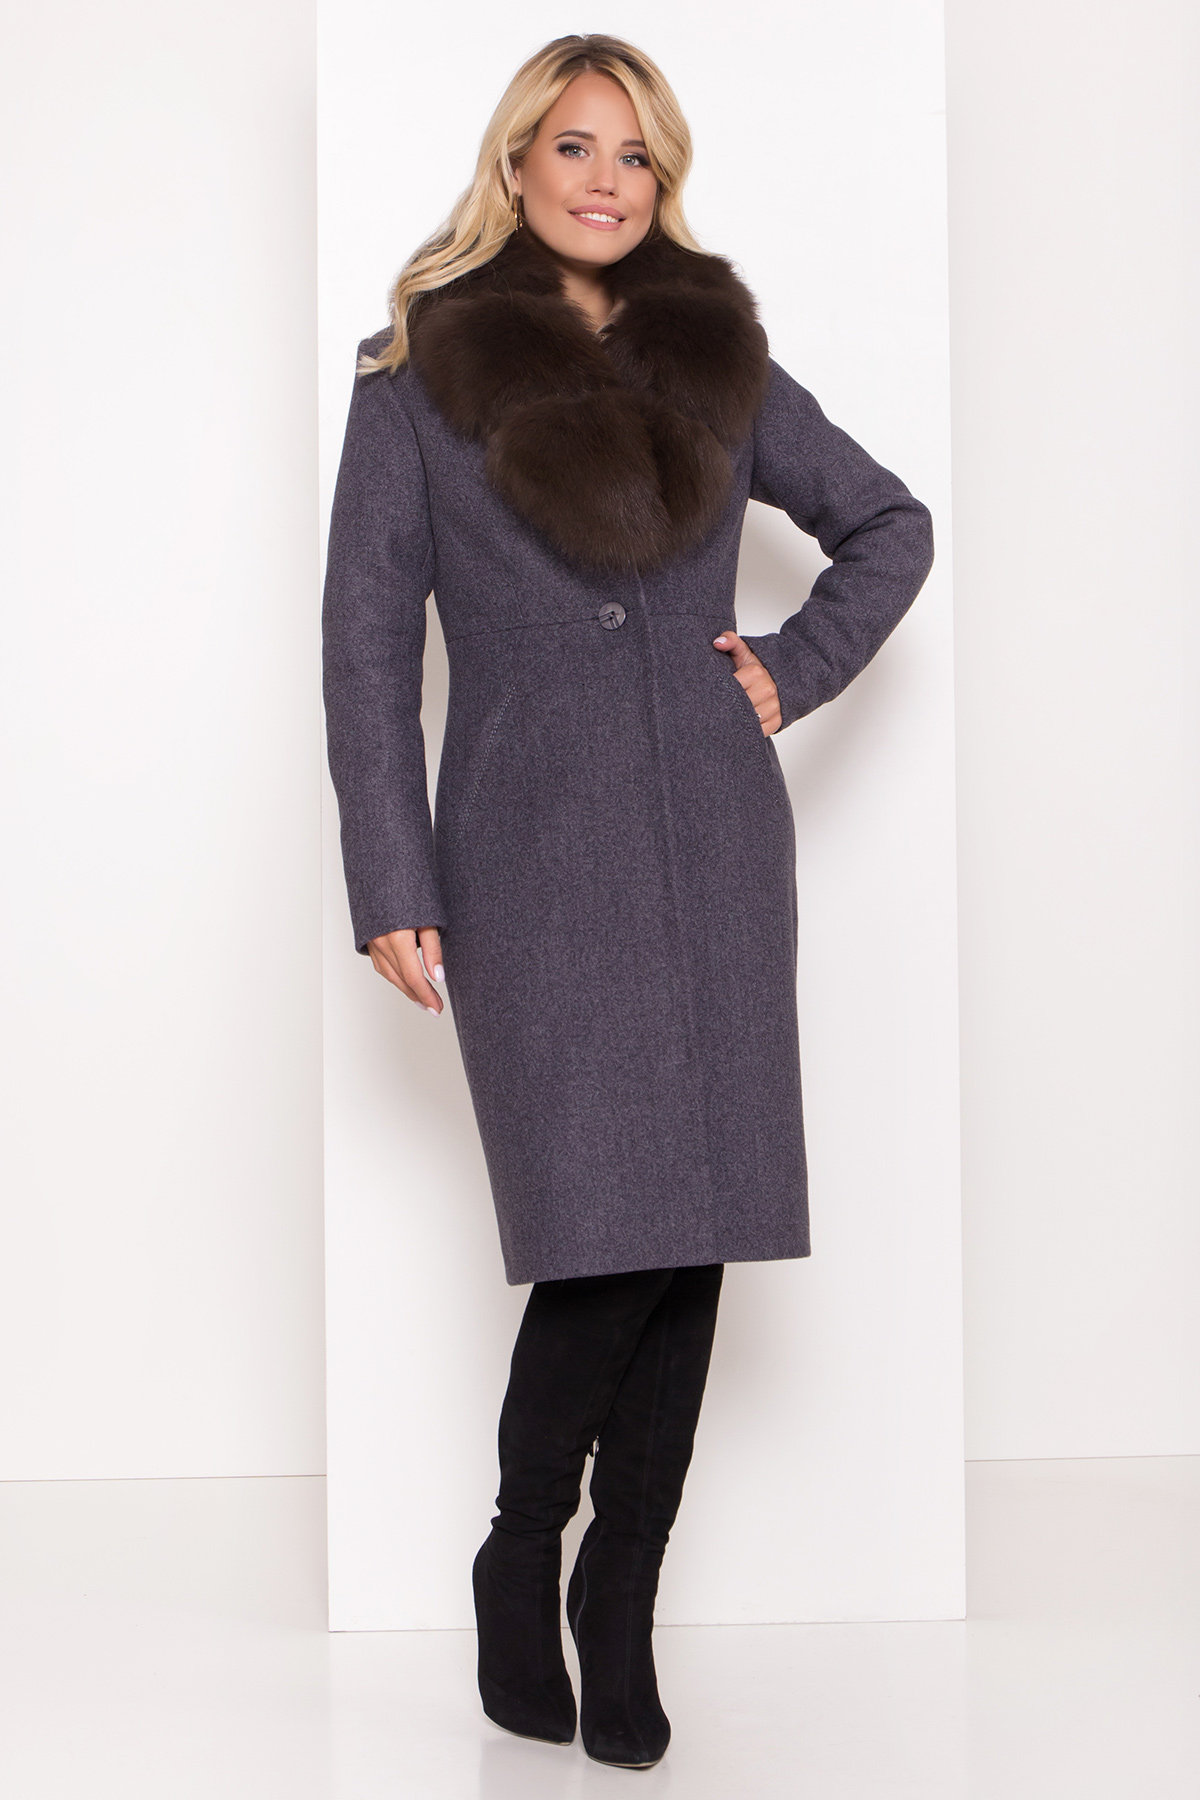 Серое стильное пальто зима с меховым воротником Камила классик 8165 АРТ. 44175 Цвет: Т.синий 543 - фото 2, интернет магазин tm-modus.ru